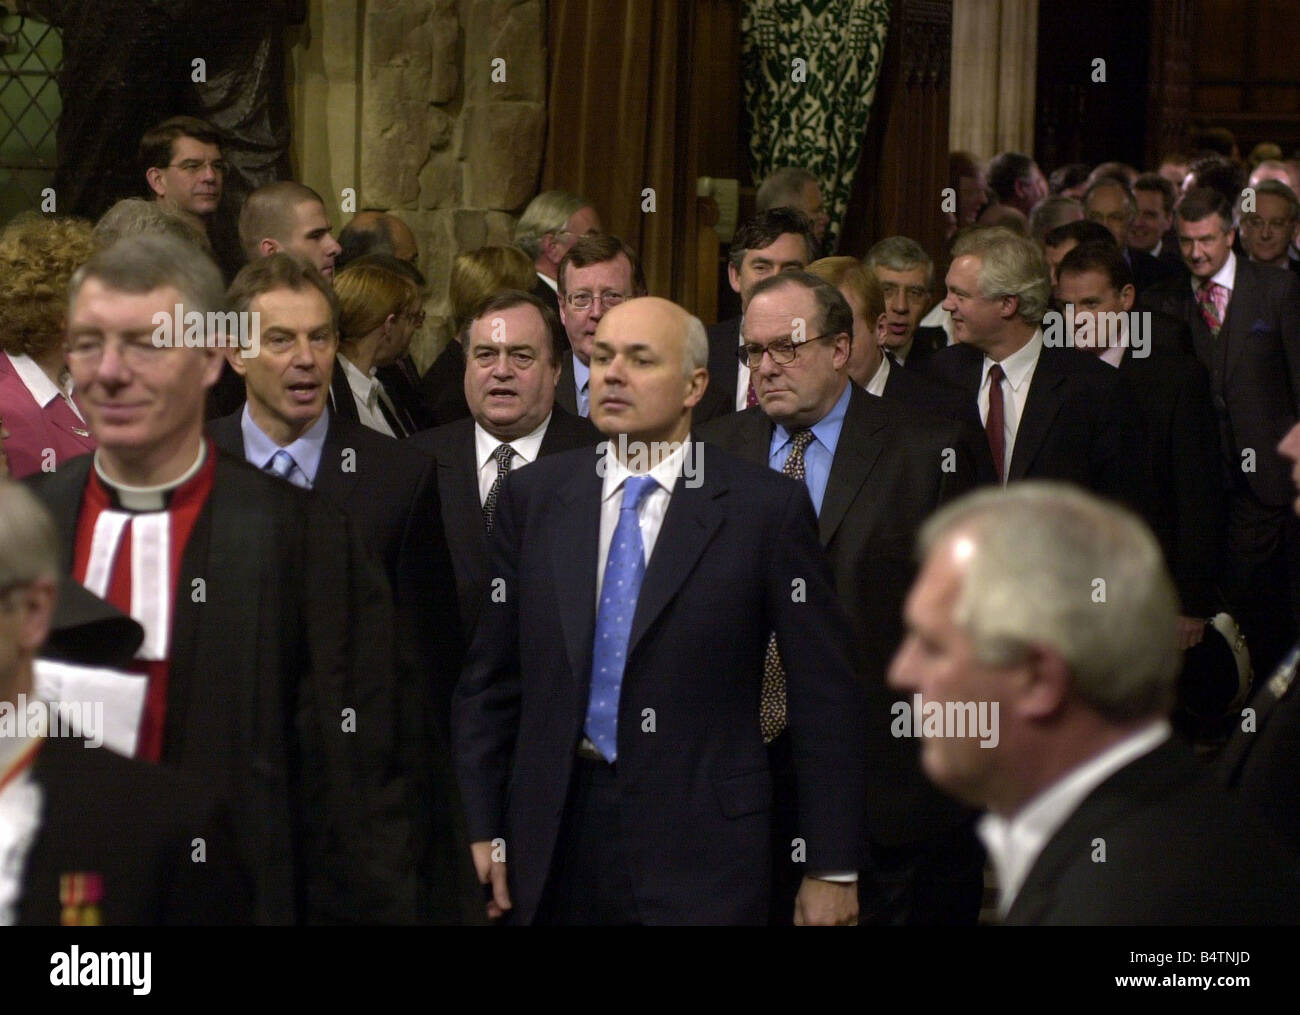 Il primo ministro Tony Blair ha lasciato il novembre 2002 e il leader dell opposizione Iain Duncan Smith lascia la lobby di membri della Camera dei comuni per la House of Lords per sentire la Regina Elisabetta II s Discorso durante lo stato apertura del Parlamento europeo a Londra Mirrorpix Foto Stock